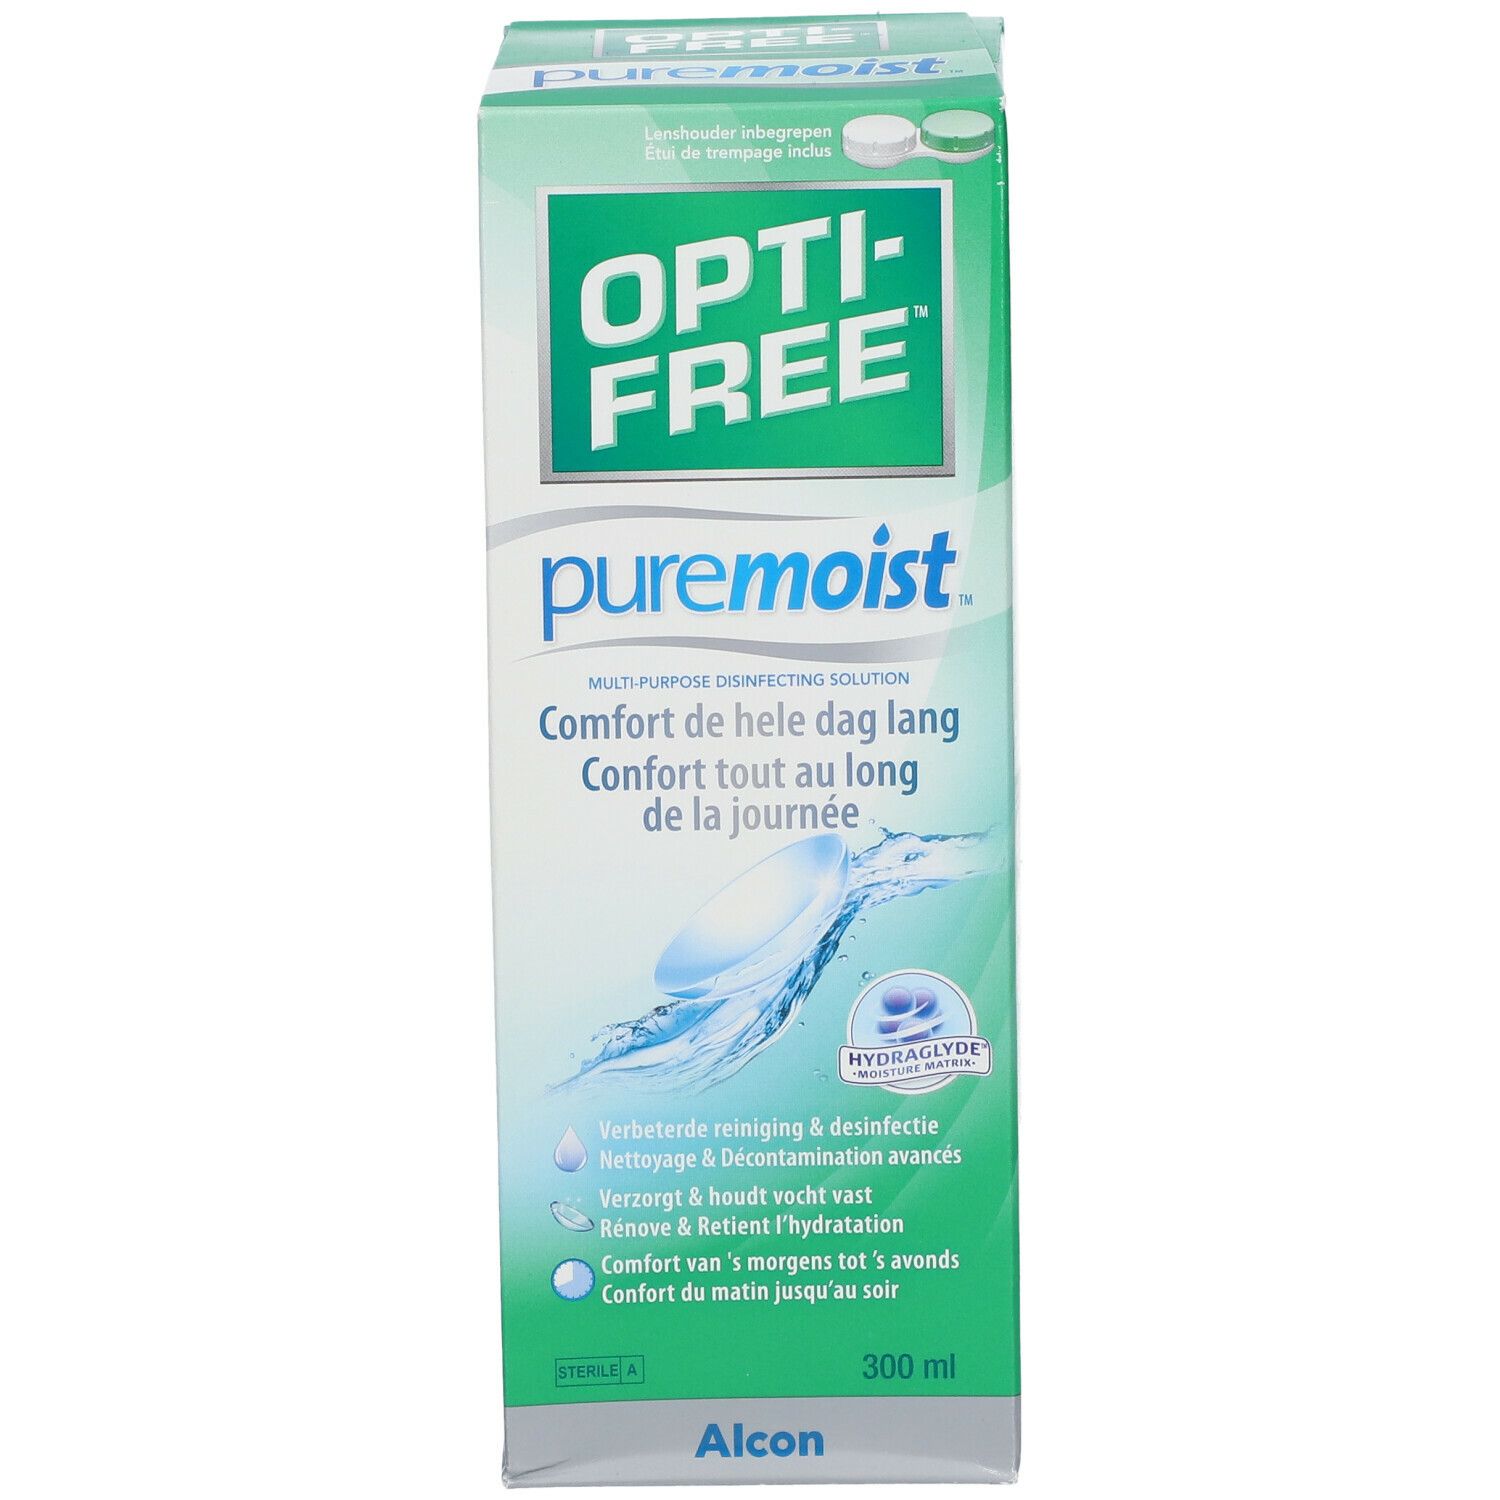 Opti-free Puremoist